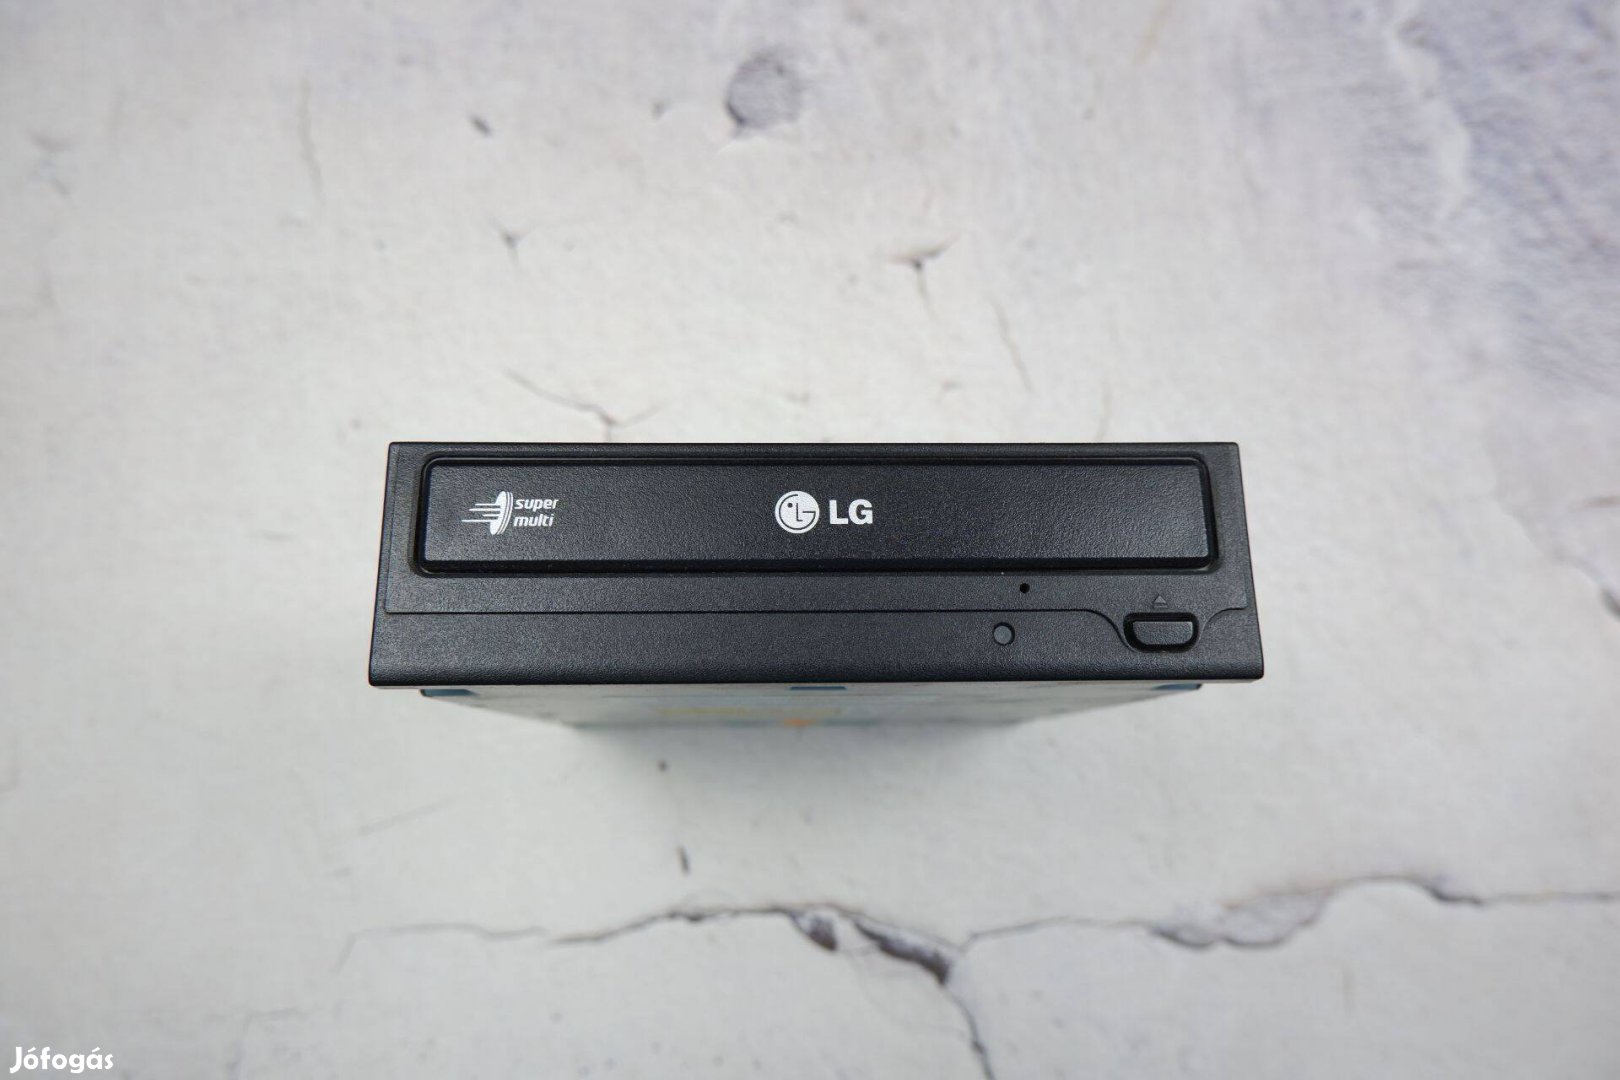 LG Supermulti DVD író SATA csatlakozós GH22NS70 fekete